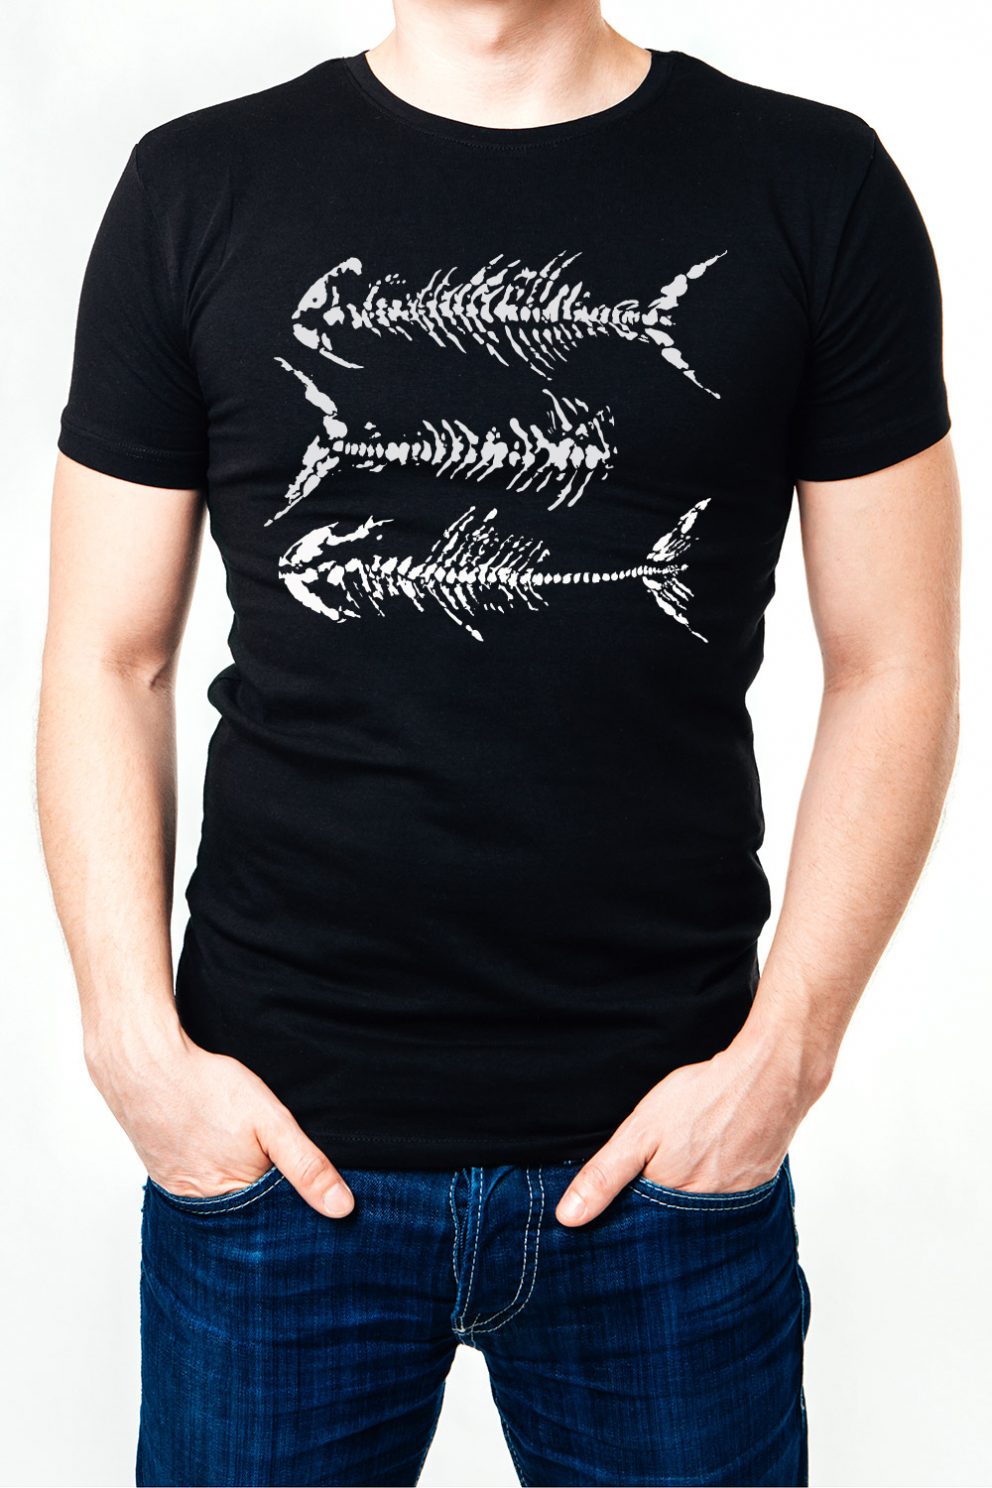 Kyst-shirt Alesund West T-shirt